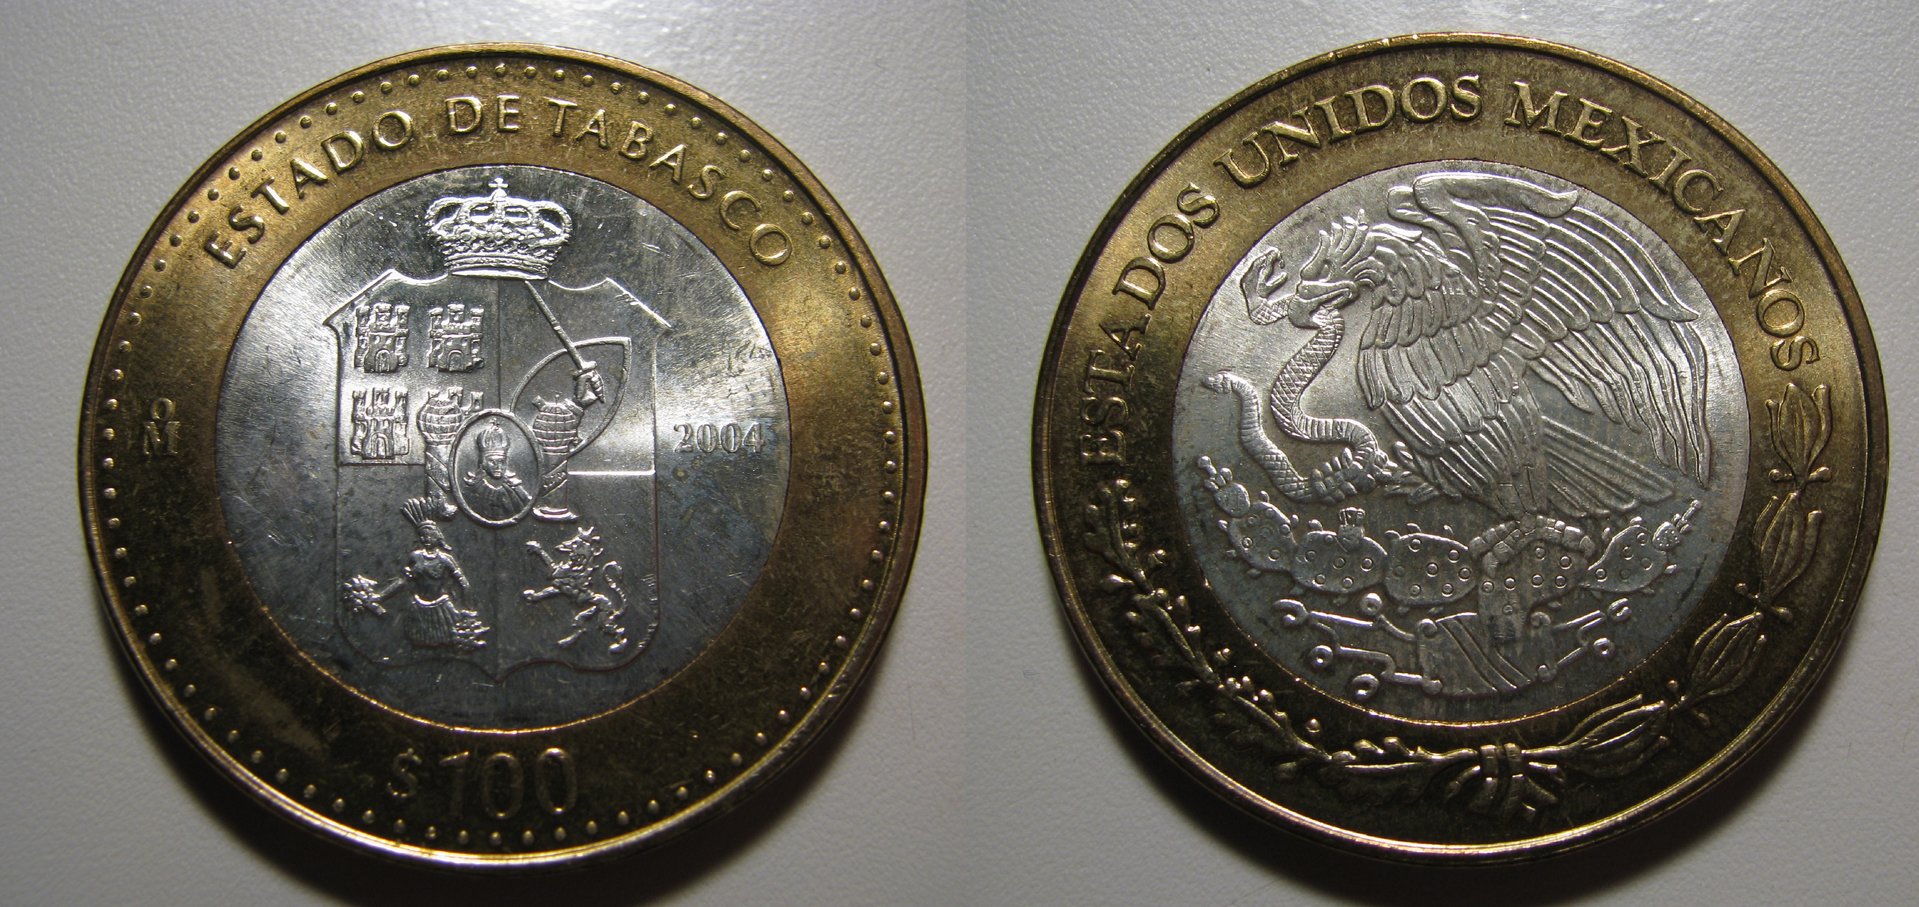 2004 Mexico 100 Pesos Tabasco.jpg